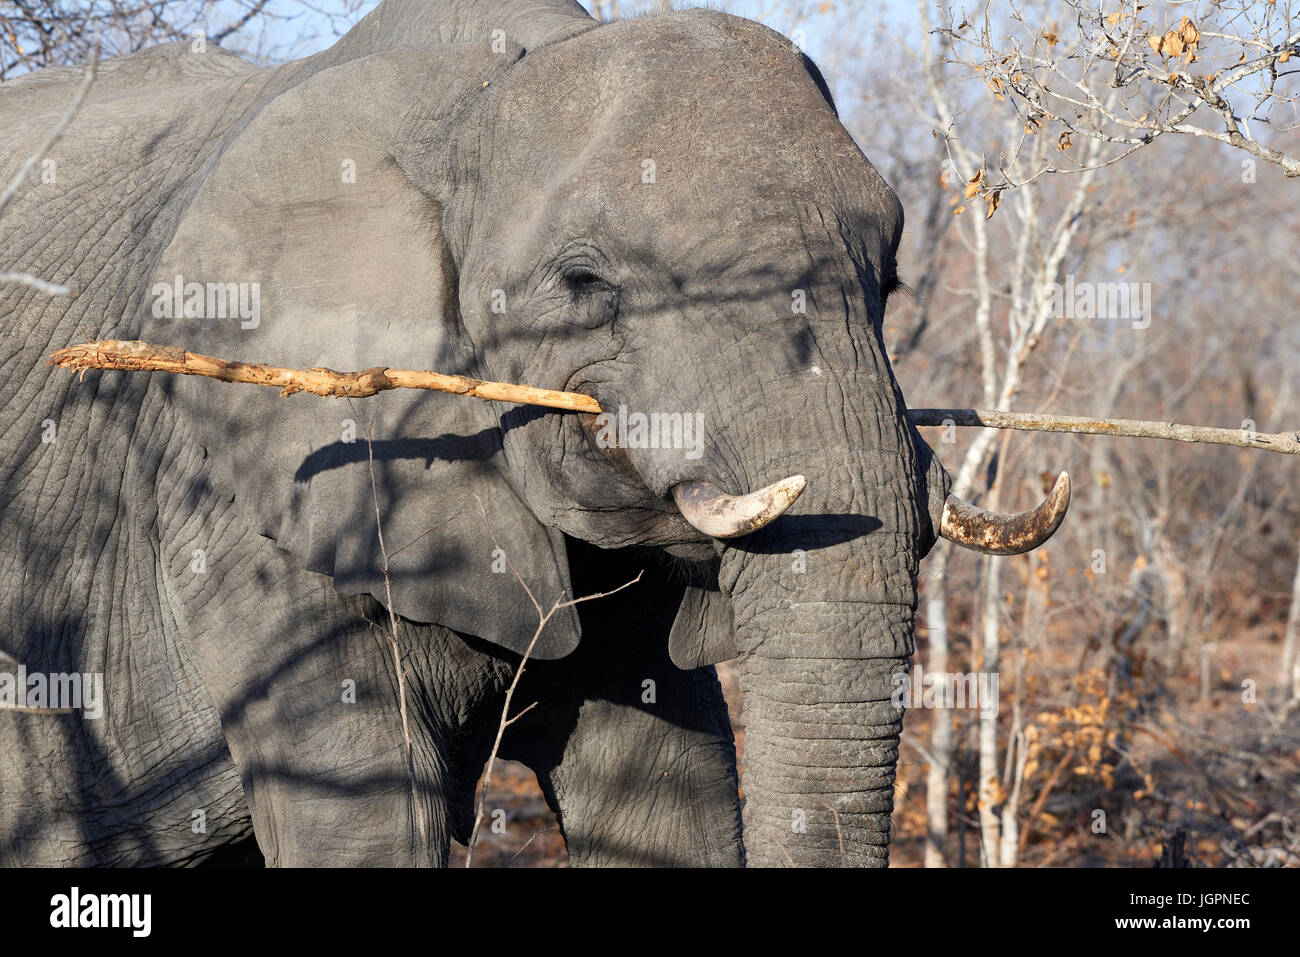 L'éléphant d'Afrique, Loxodonta africana, le décapage d'une direction générale de l'écorce, sables bitumineux Sabie game reserve, Afrique du Sud Banque D'Images